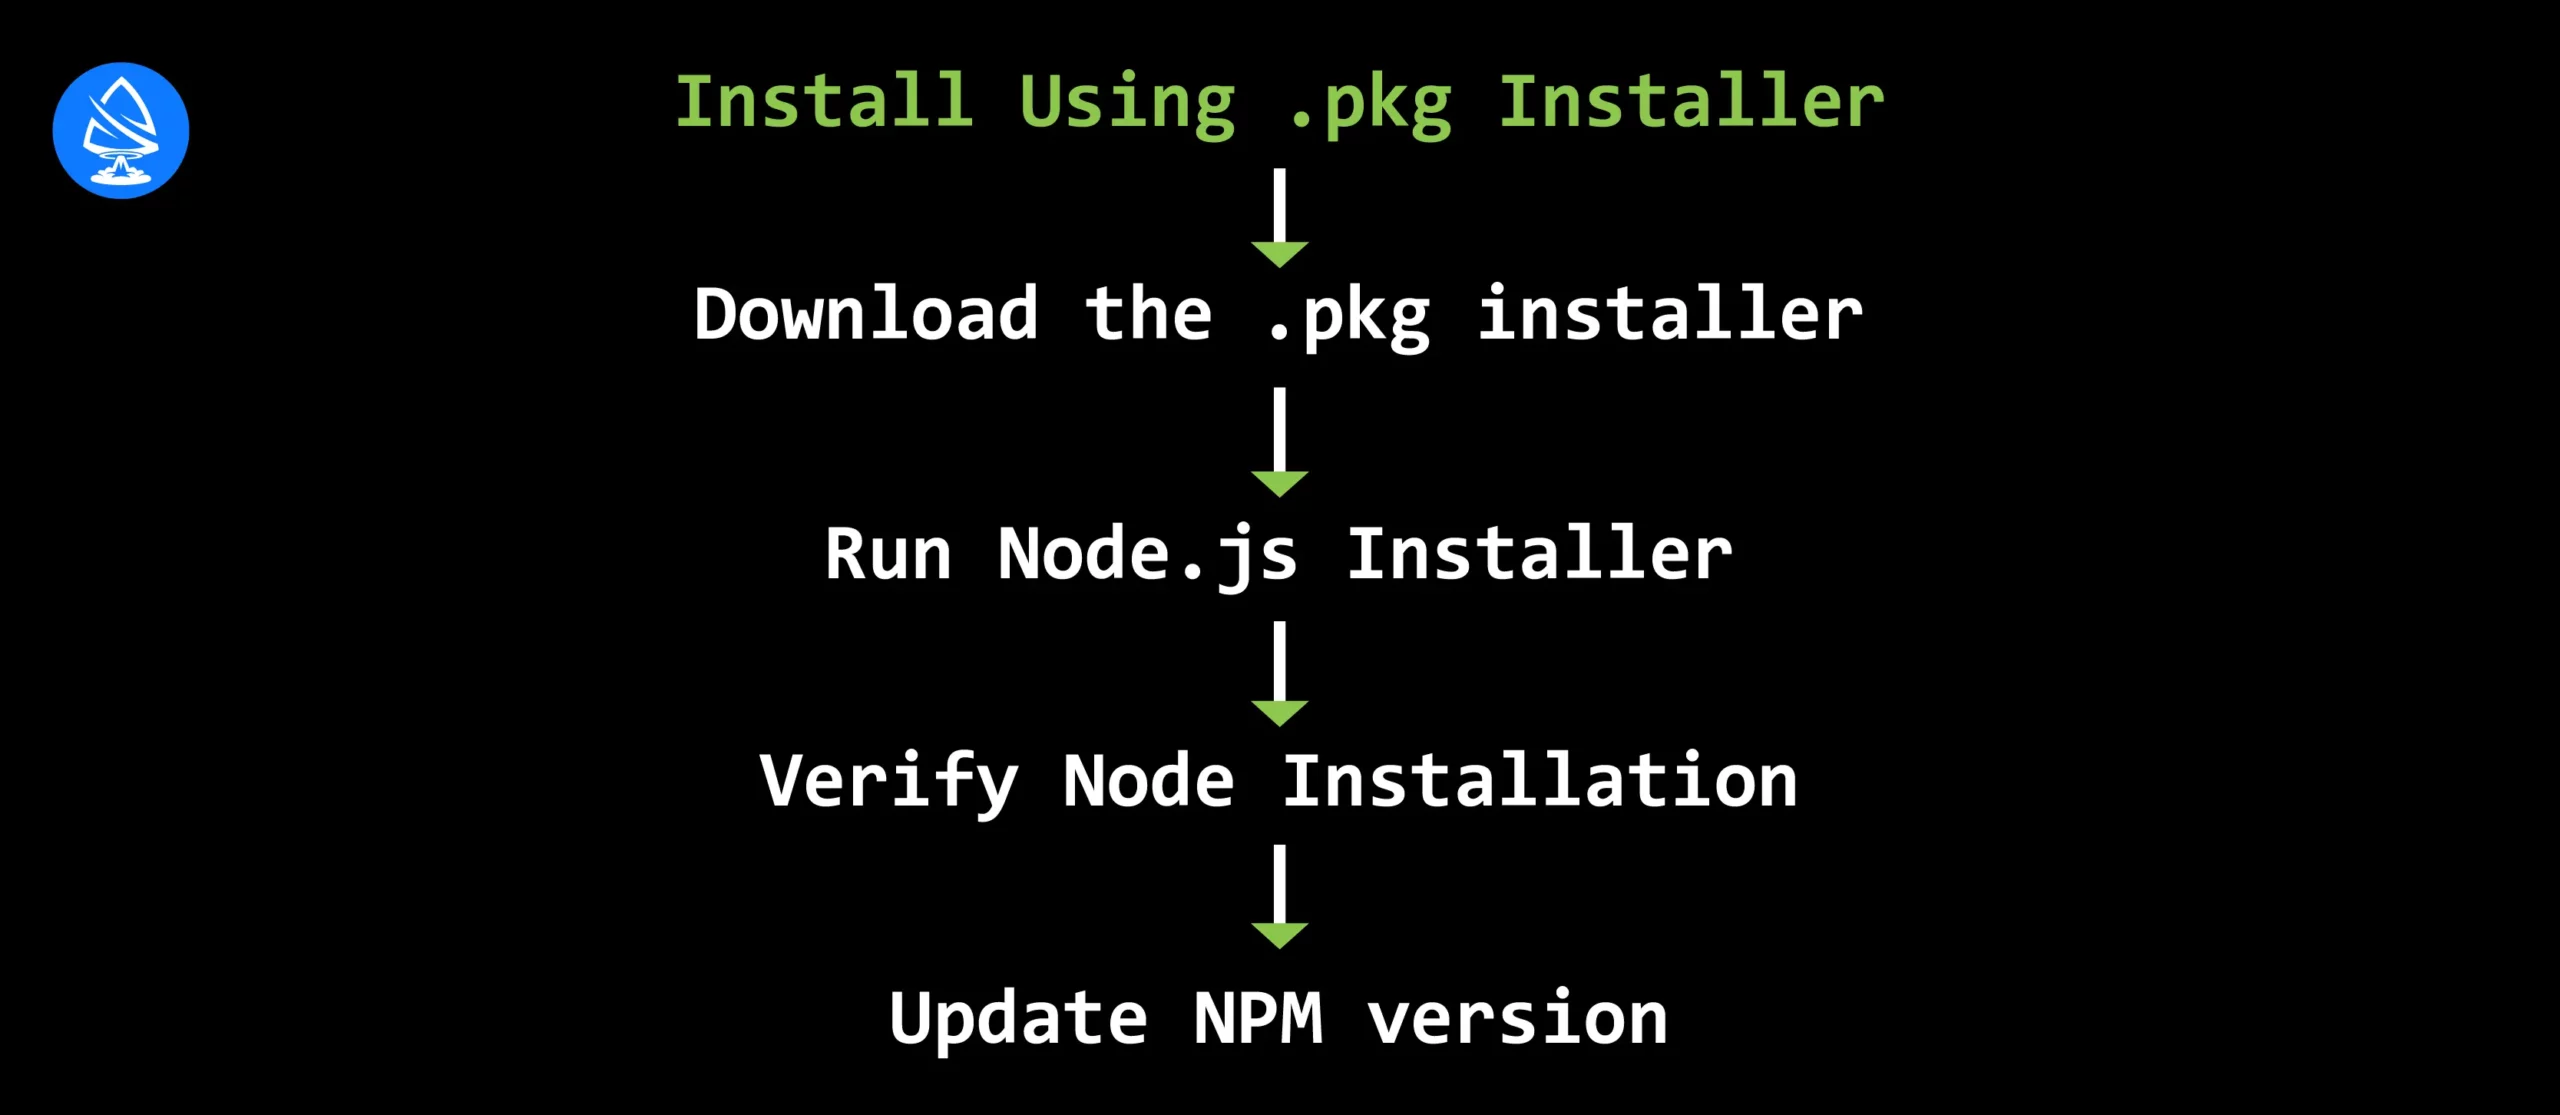 Install Using .pkg Installer 